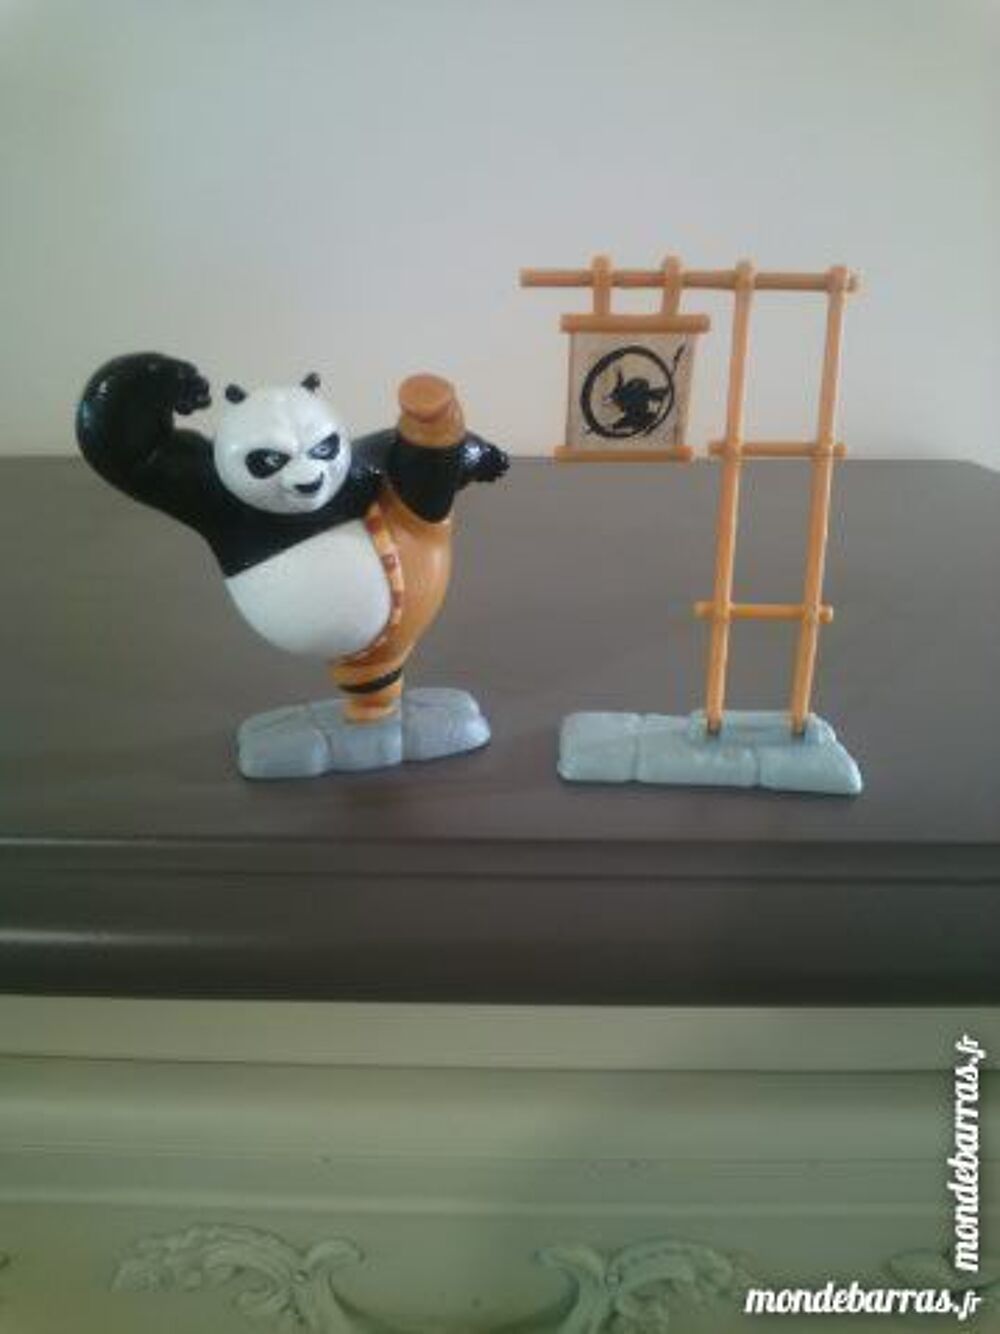 Figurine Kung Fu Panda 3 - TBE Jeux / jouets